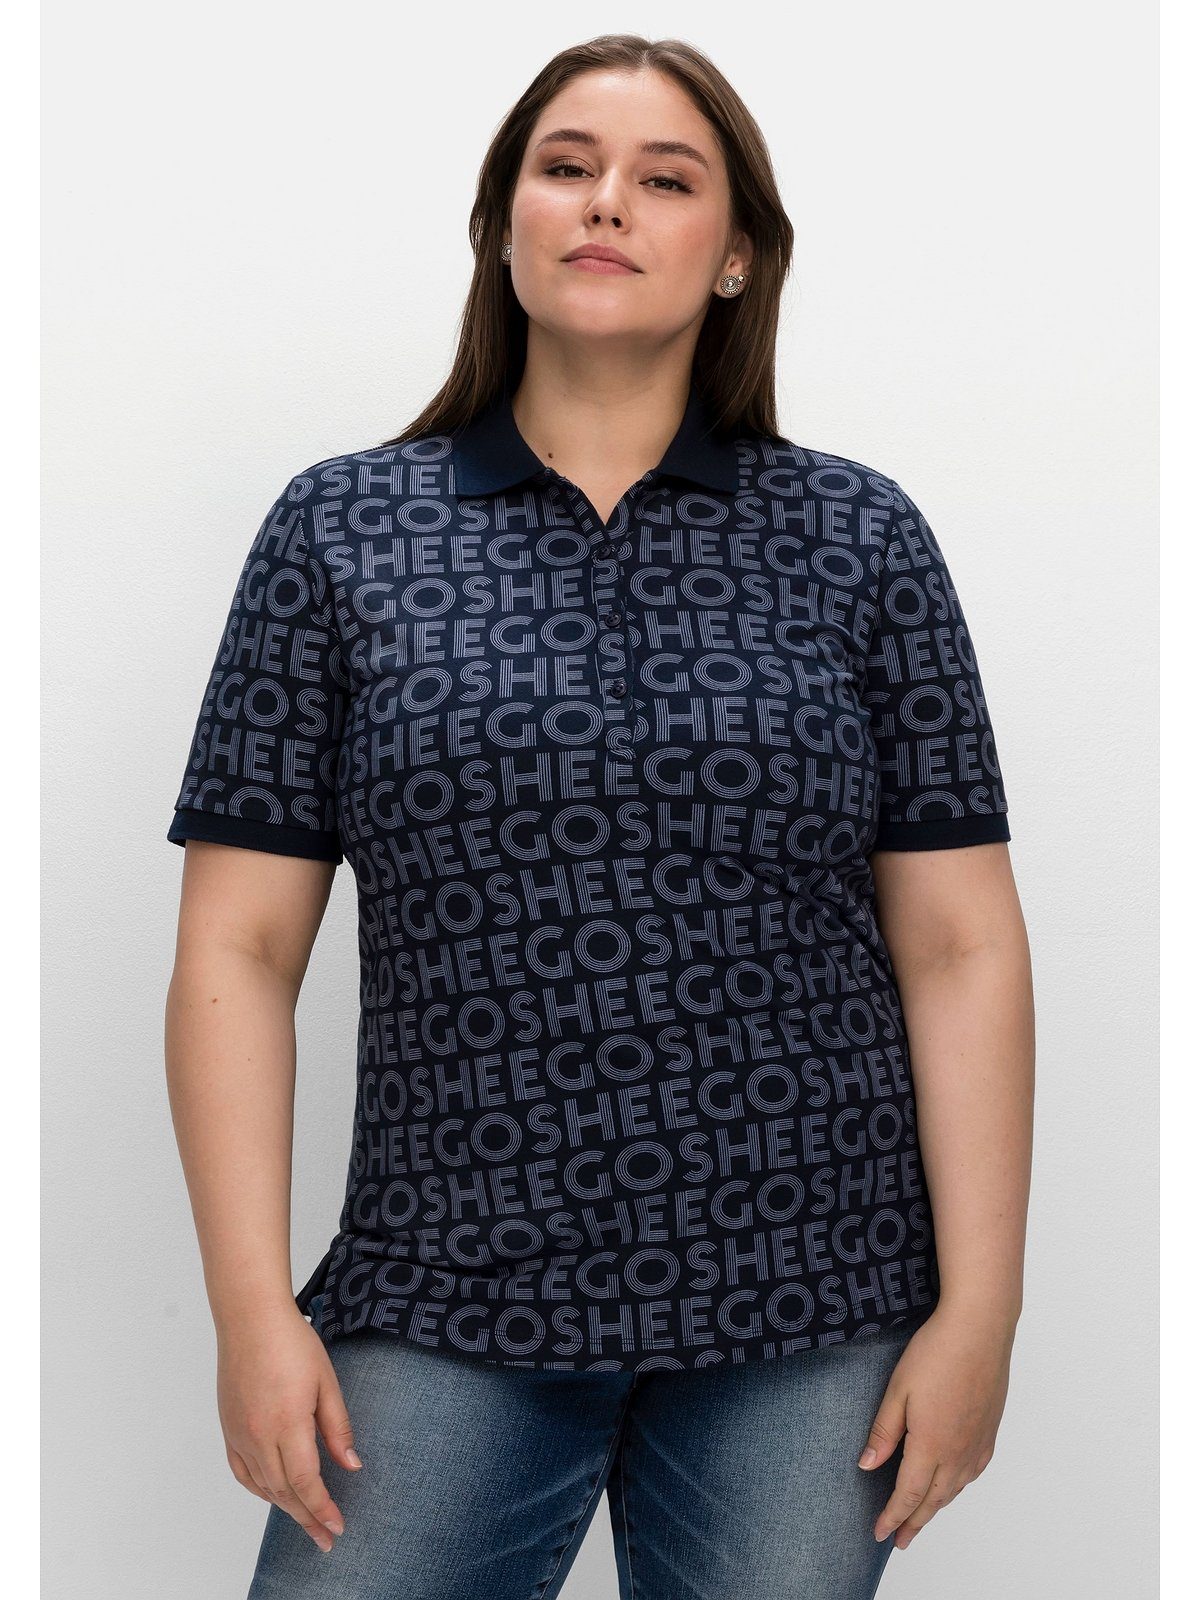 mit Sheego T-Shirt Große Waffelpiqué Alloverdruck, aus Größen